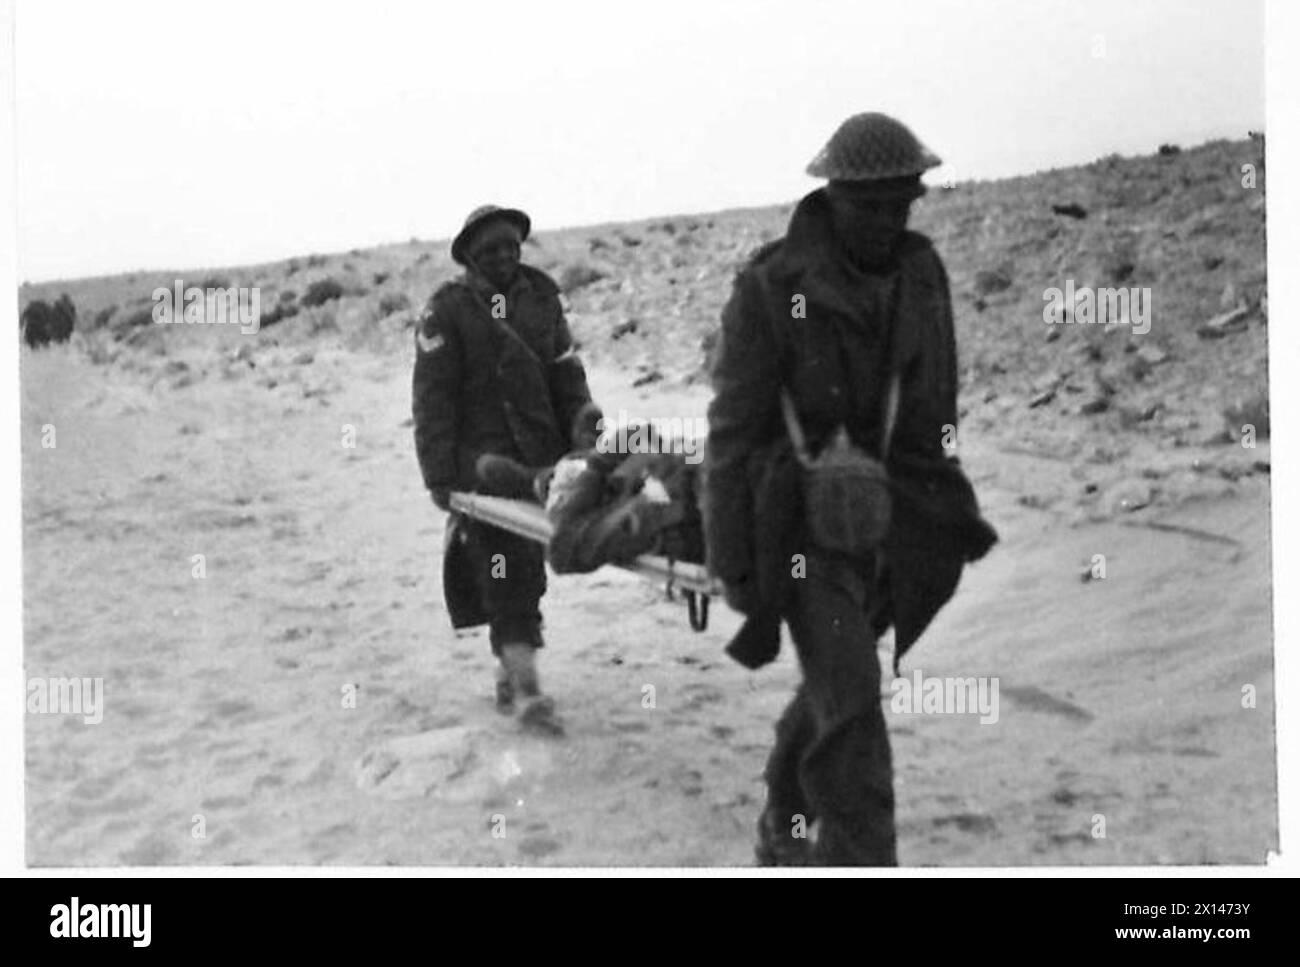 LE ULTIME FOTO DAL DESERTO occidentale - le truppe sudafricane si sono insinuate lungo i wadi verso Sollum durante la notte e hanno attaccato la città alle prime luci del giorno. Un uomo ferito portato dopo l'attacco dell'esercito britannico Foto Stock